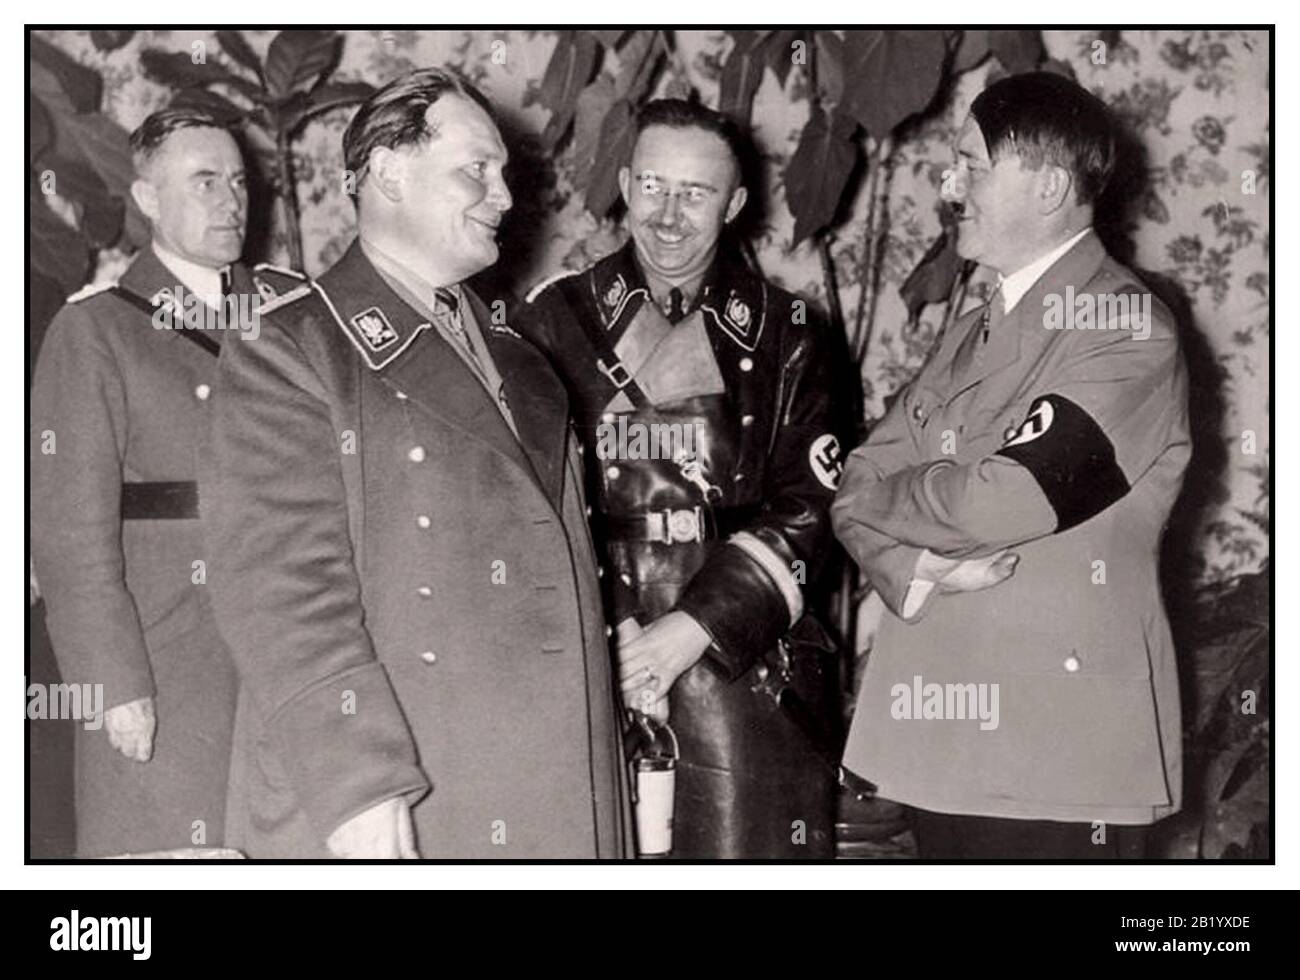 Nazi-Archiv 1940 Hermann Göring, Heinrich Himmler und Adolf Hitle Rkanzler von Deutschland 1933 und dann als Führer 1934 lächelnd und lachend alle mit Militäruniform. Stockfoto